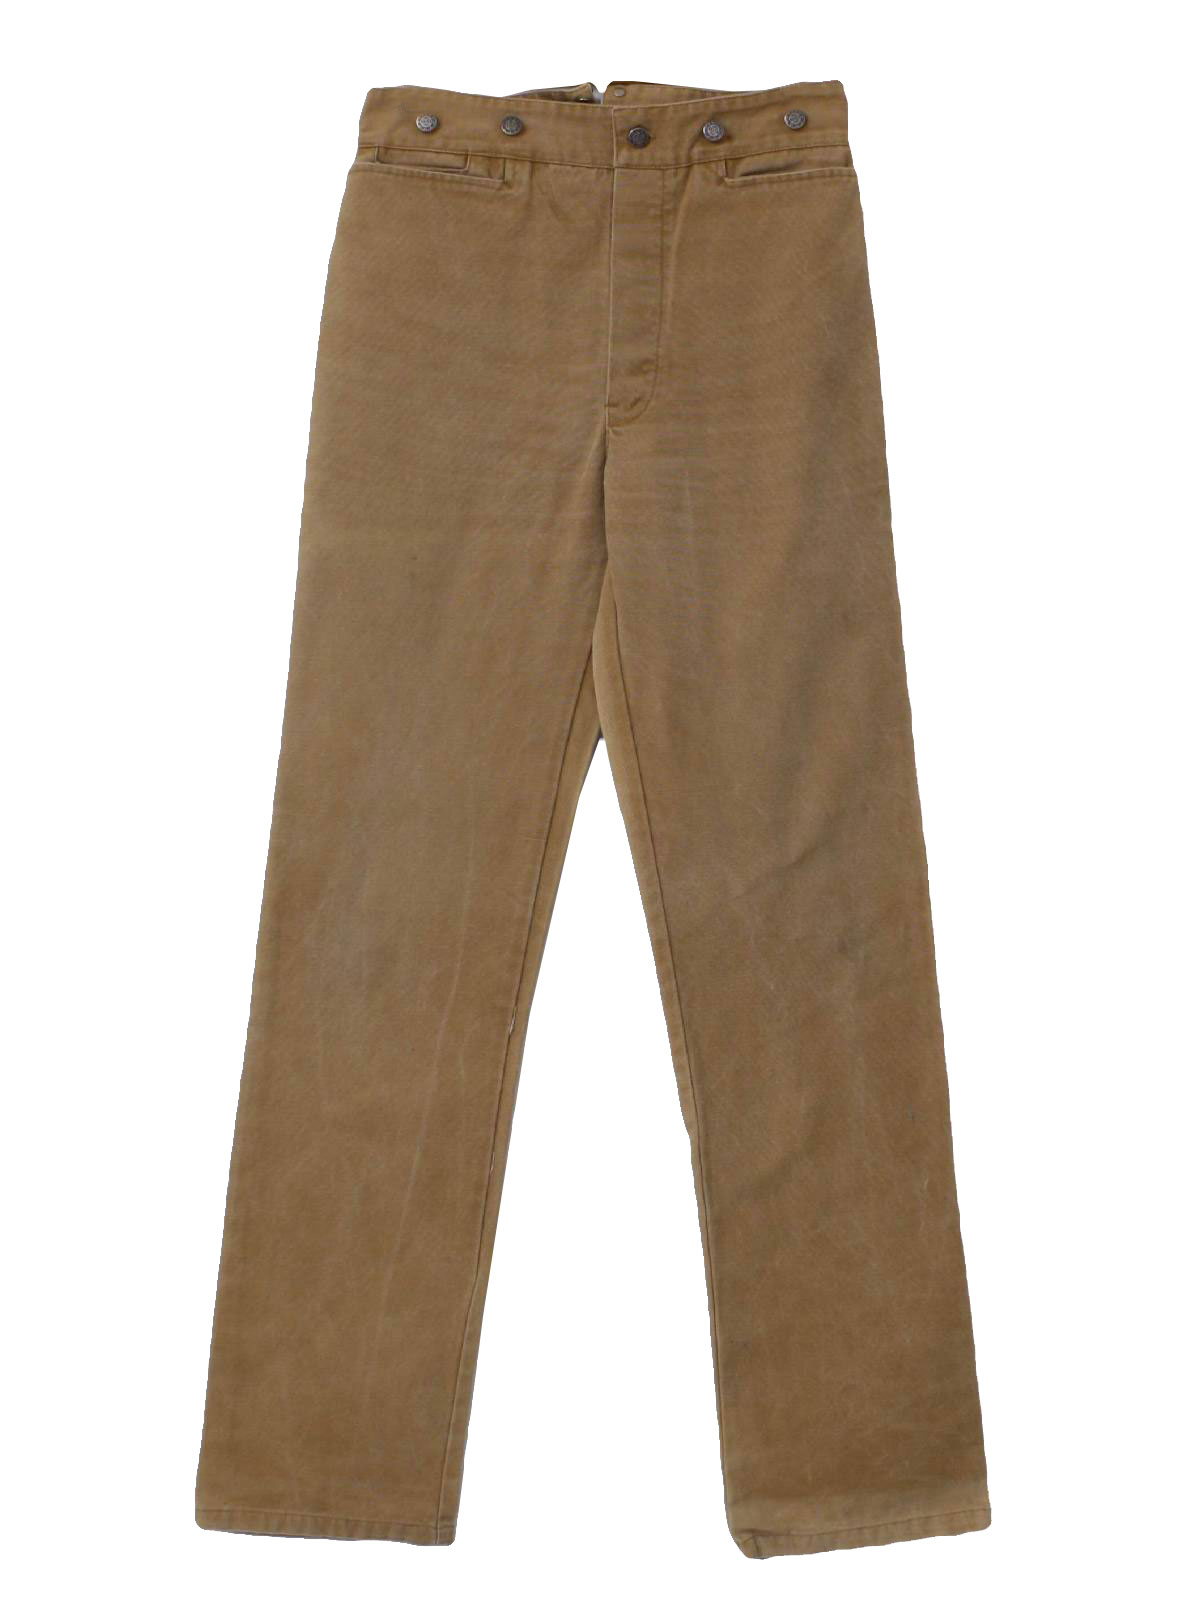 Wah Maker Eighties Vintage Pants: 40s style made in 80s -Wah Maker ...